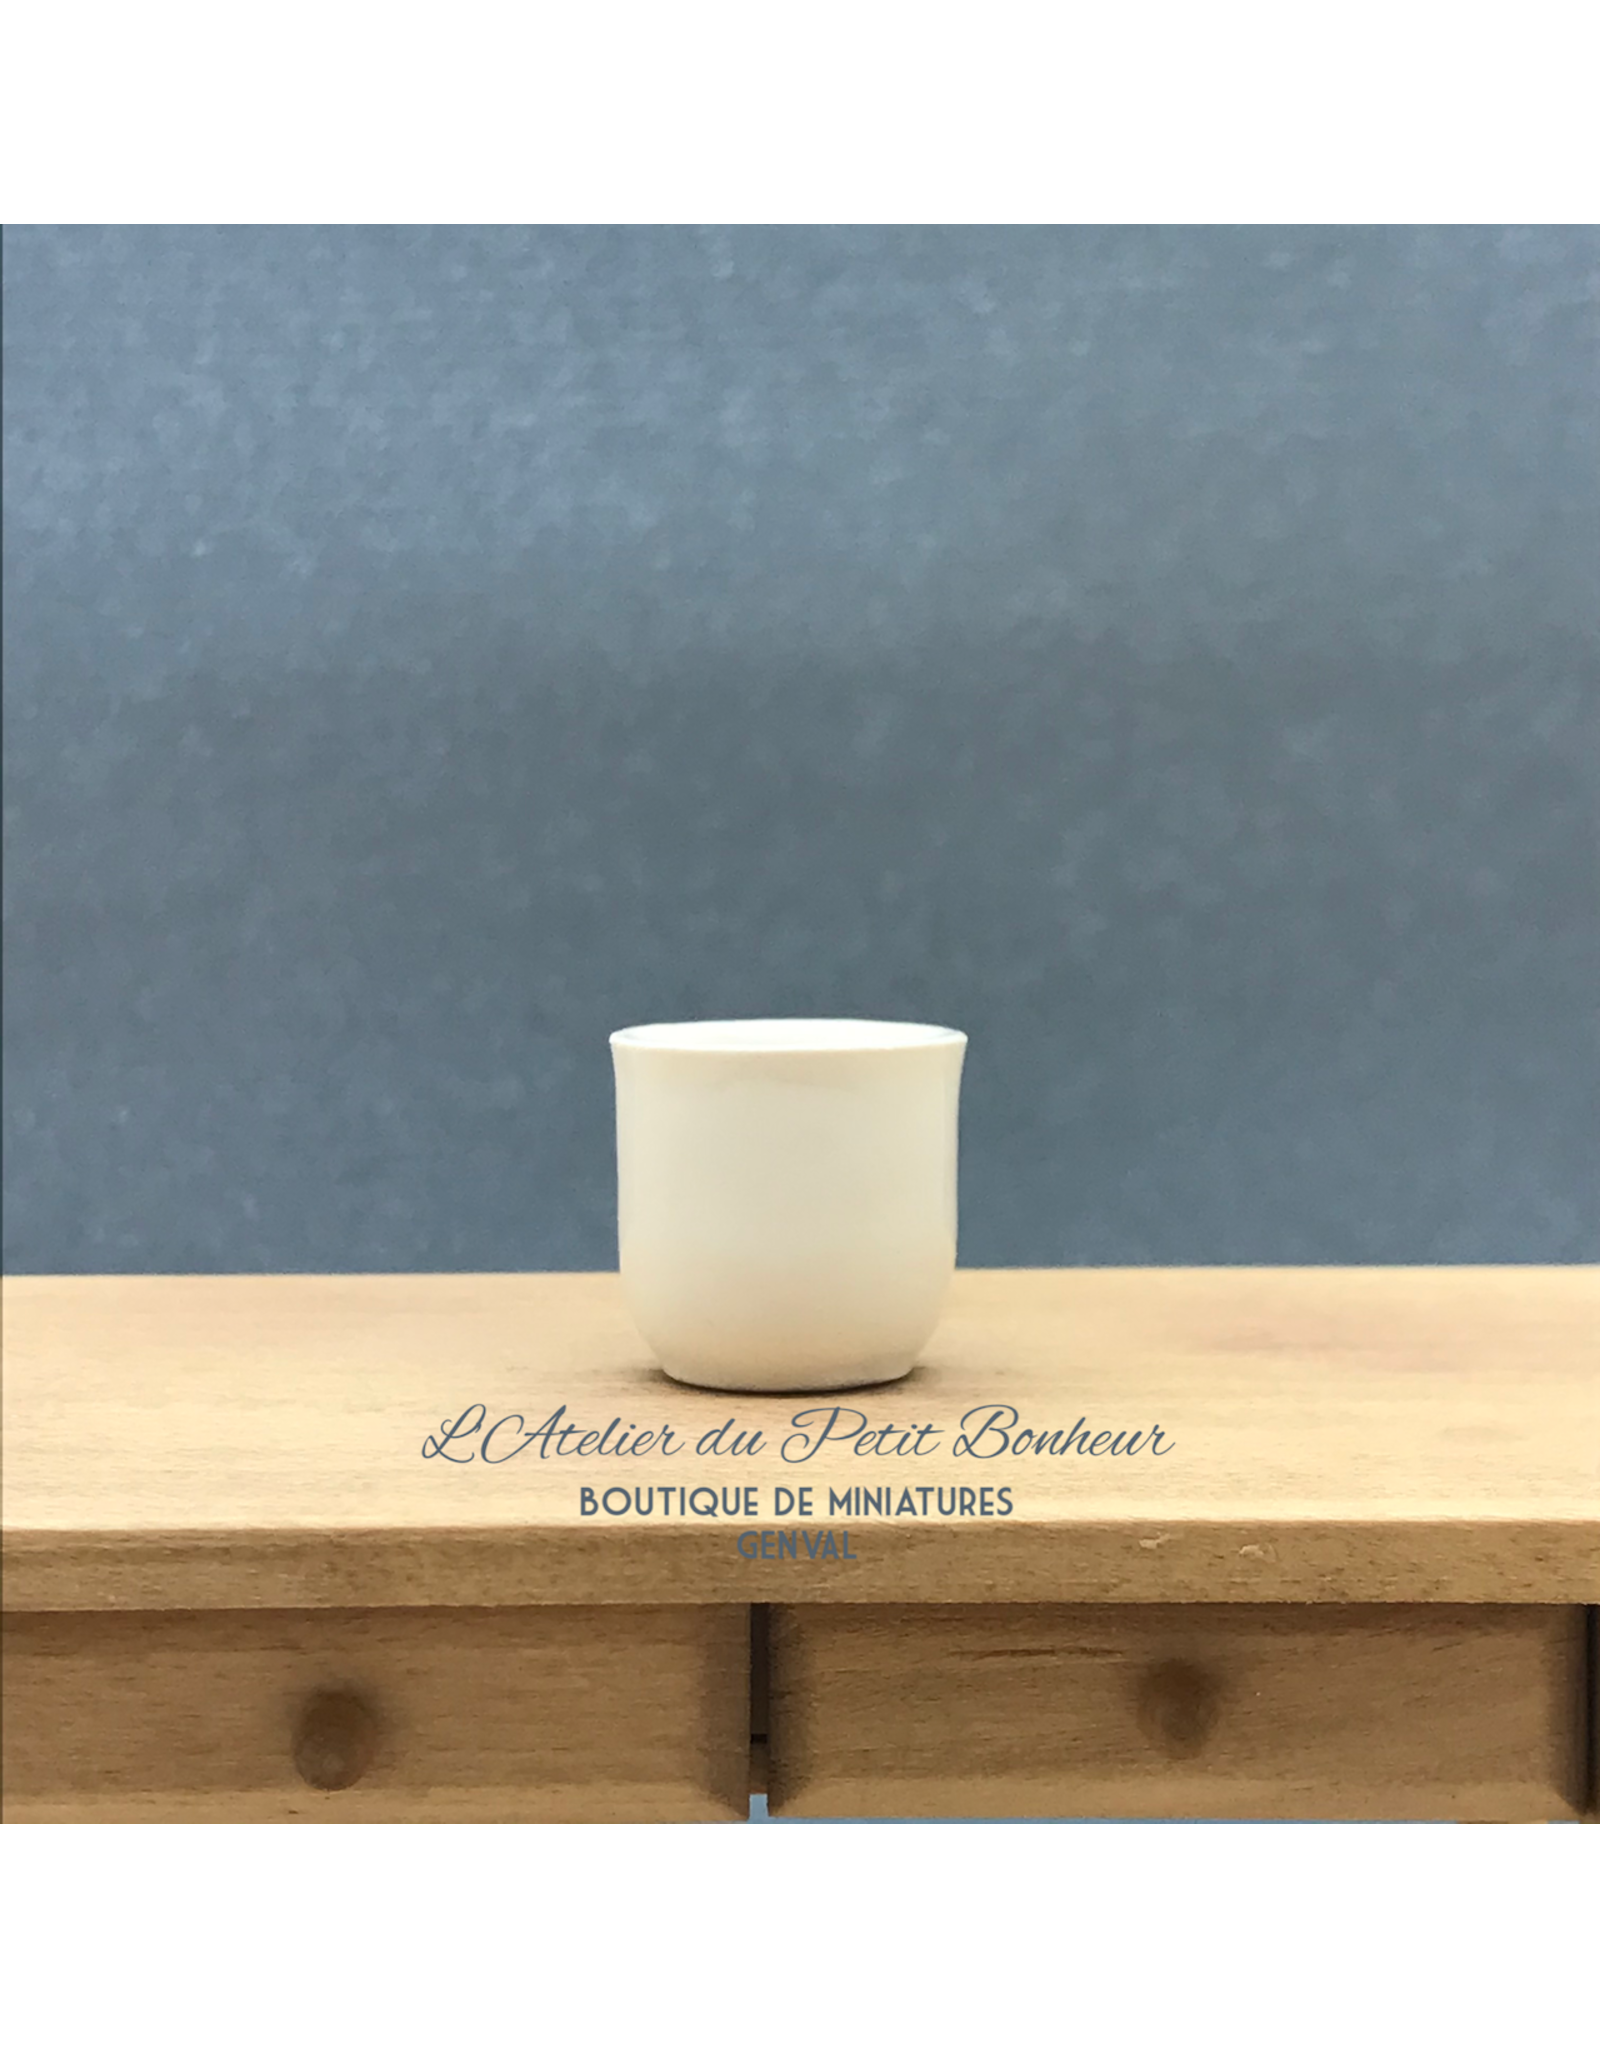 CP Prestige Ceramics (UK) Cache-pot blanc (Grand) miniature 1:12